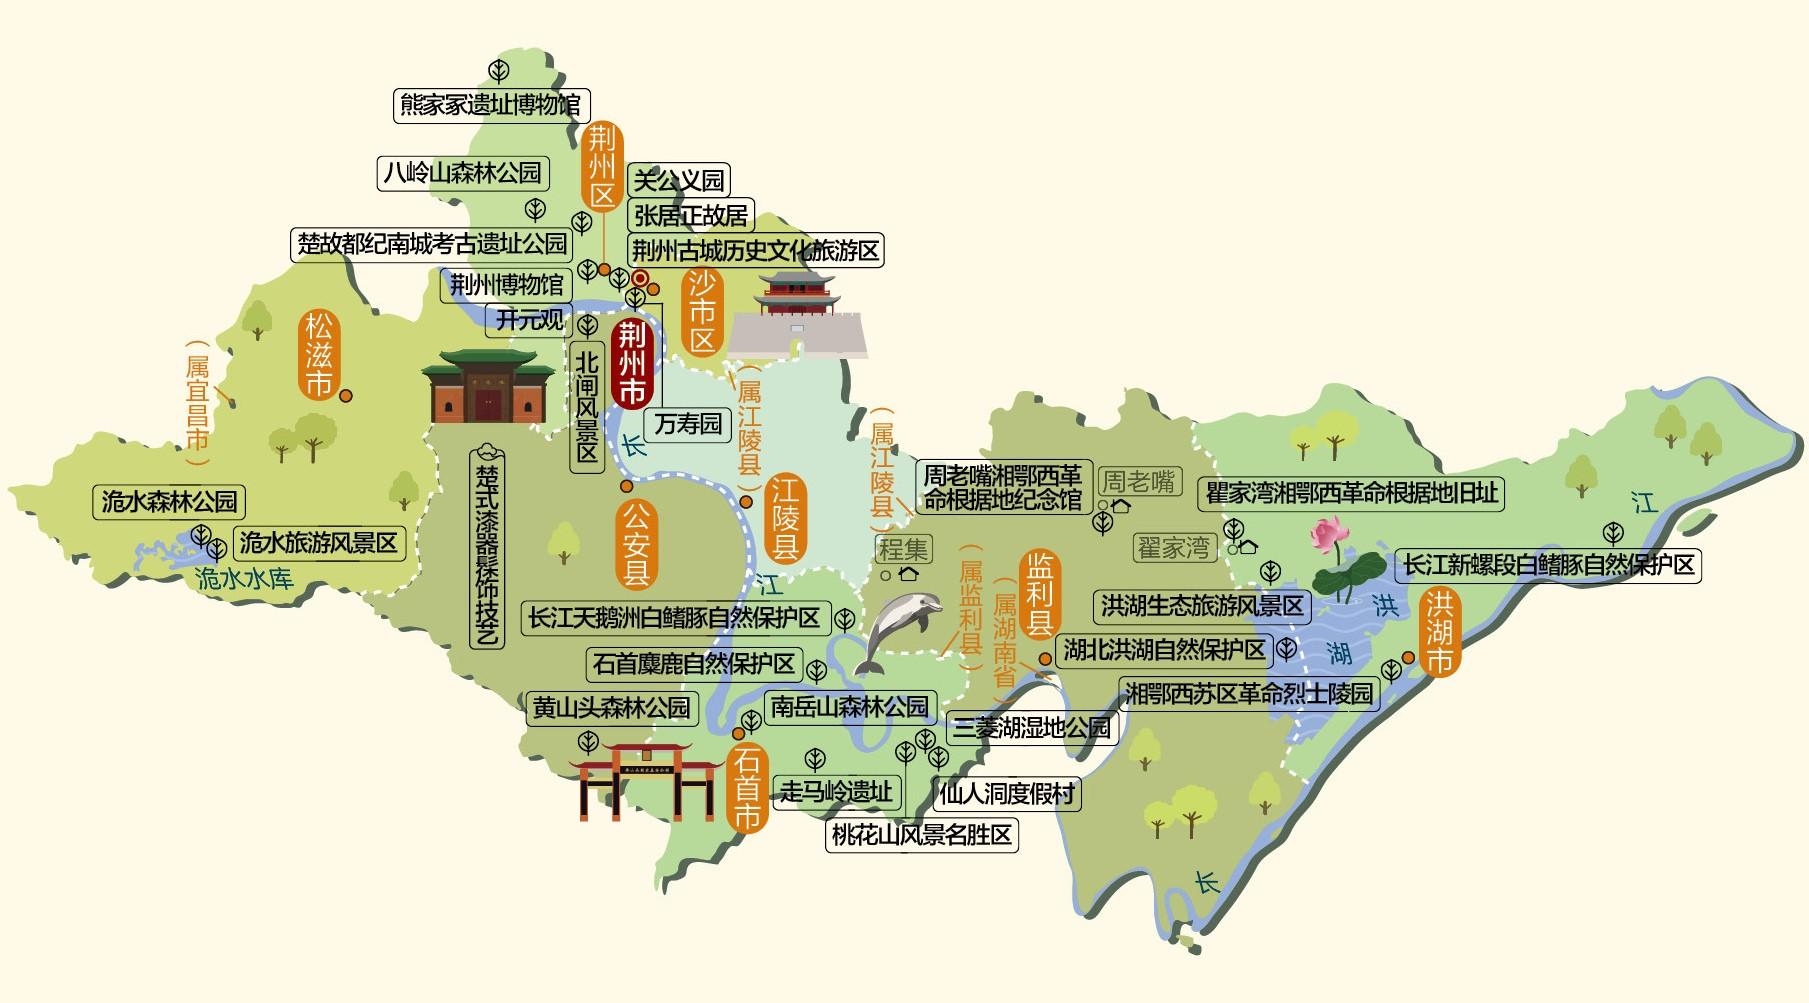 湖北省旅游必备高清人文地图 13个地级市 